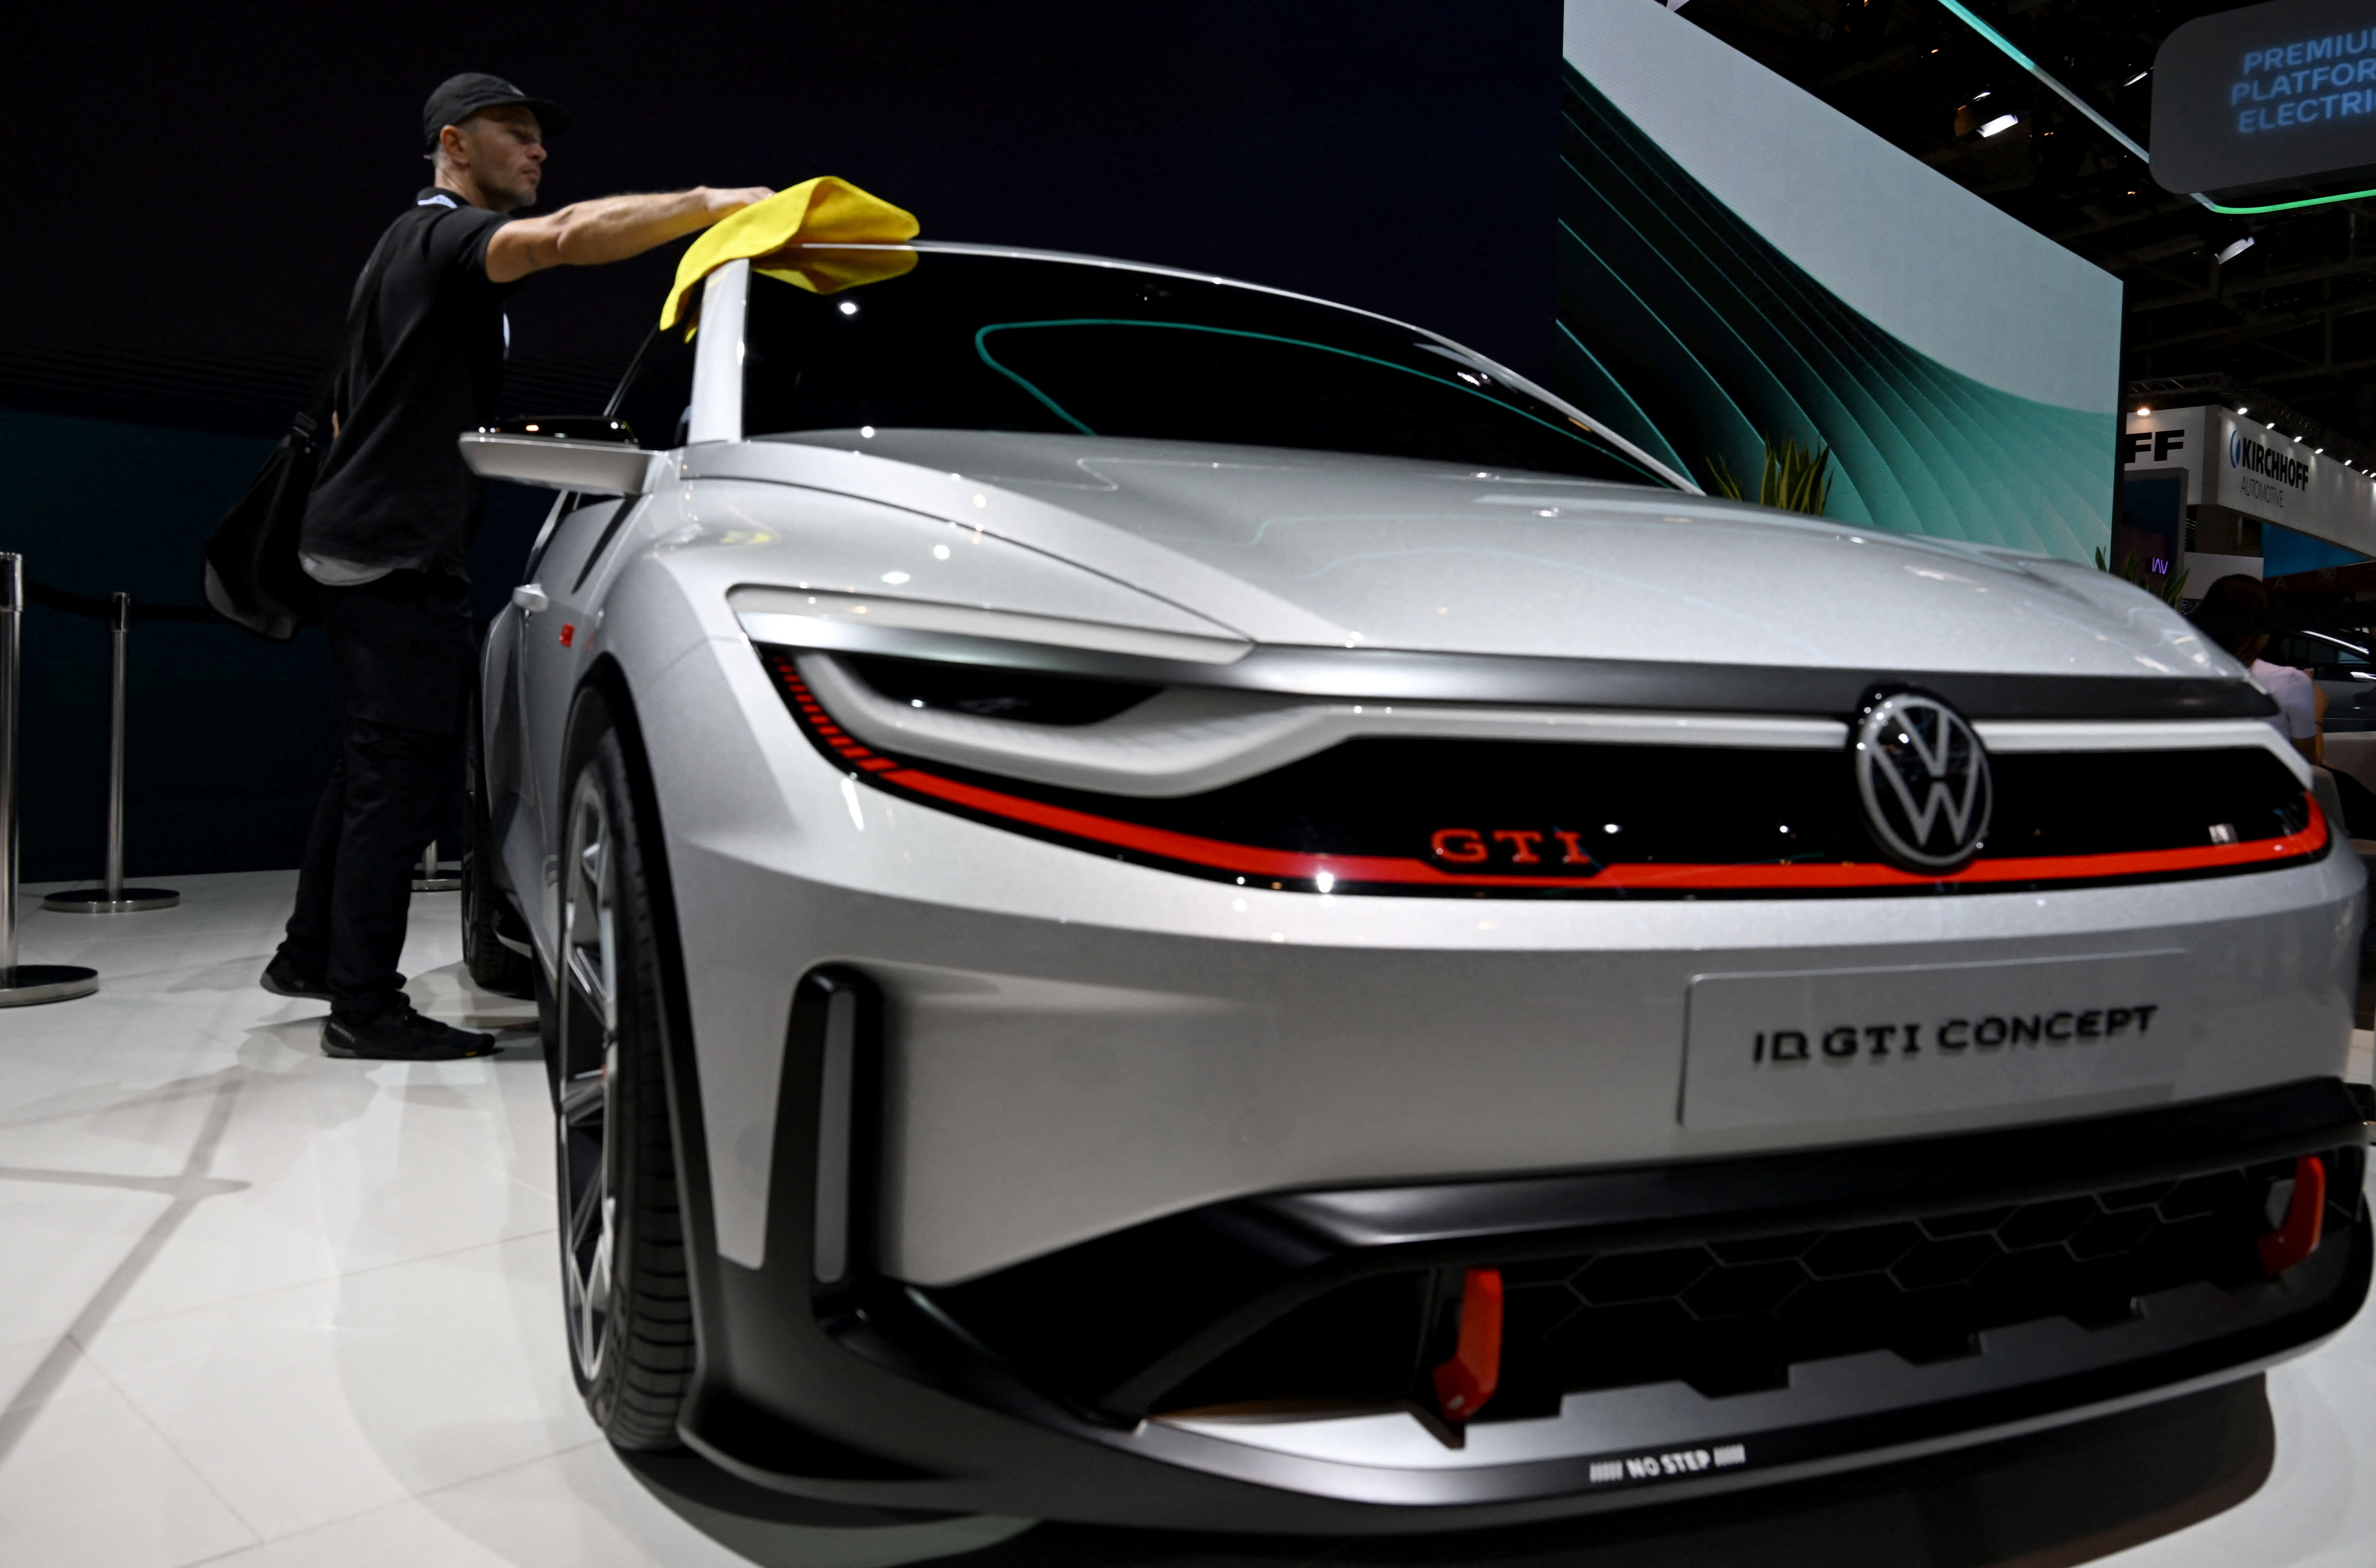 Lucro da Volkswagen cai 20% no primeiro trimestre devido à queda nas vendas